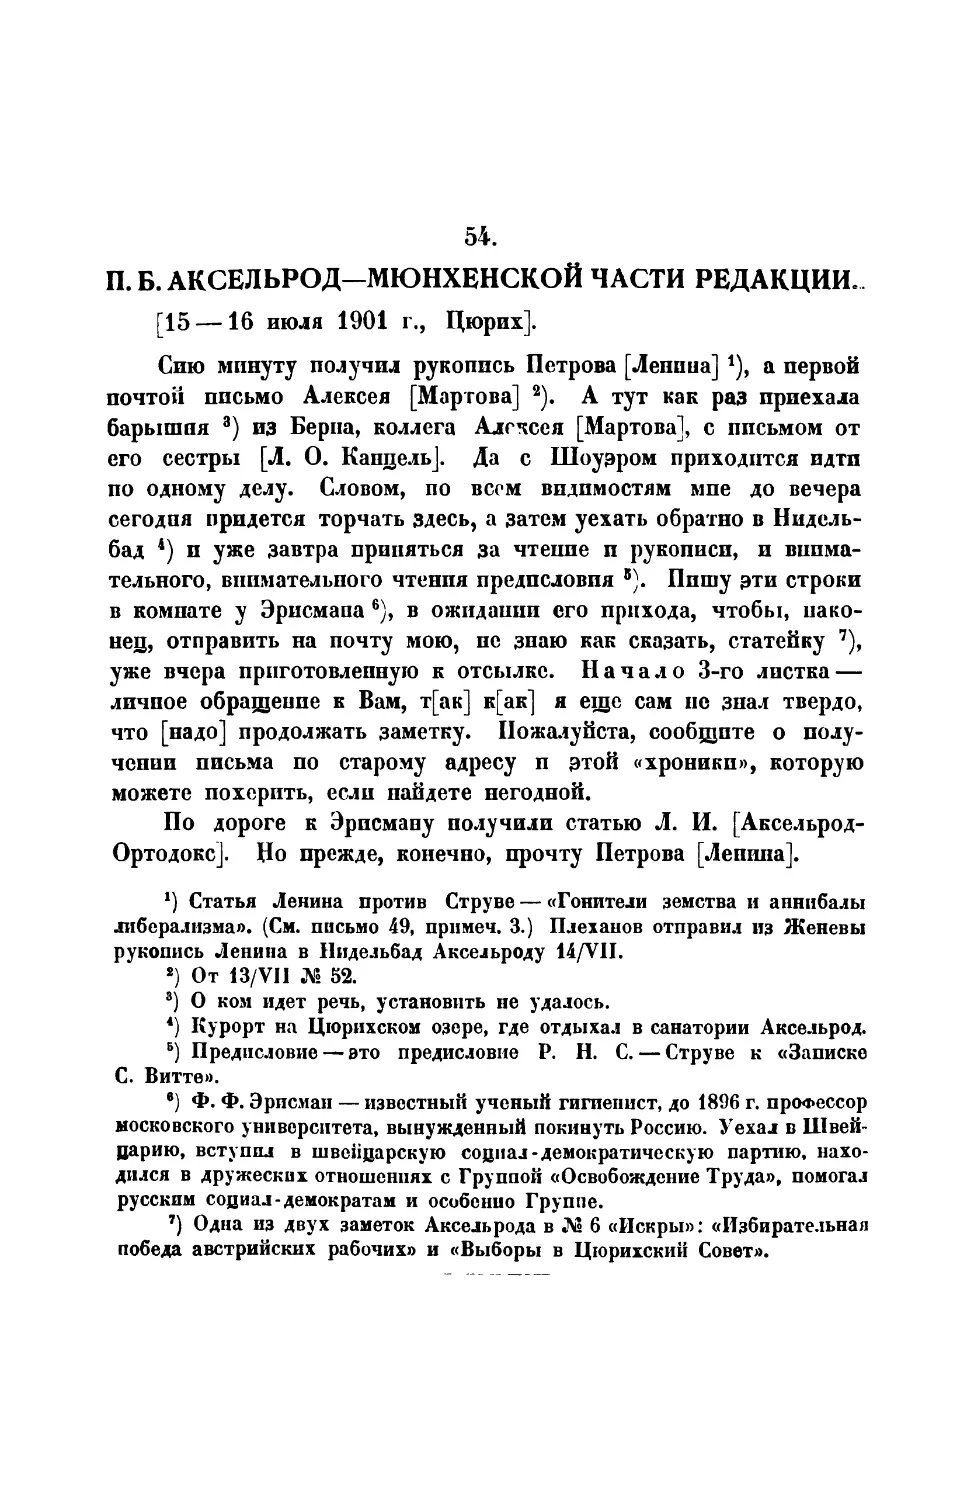 54. П. Б. Аксельрод. — Письмо Мюнхенской части редакции от 15 — 16 VII 1901 г.